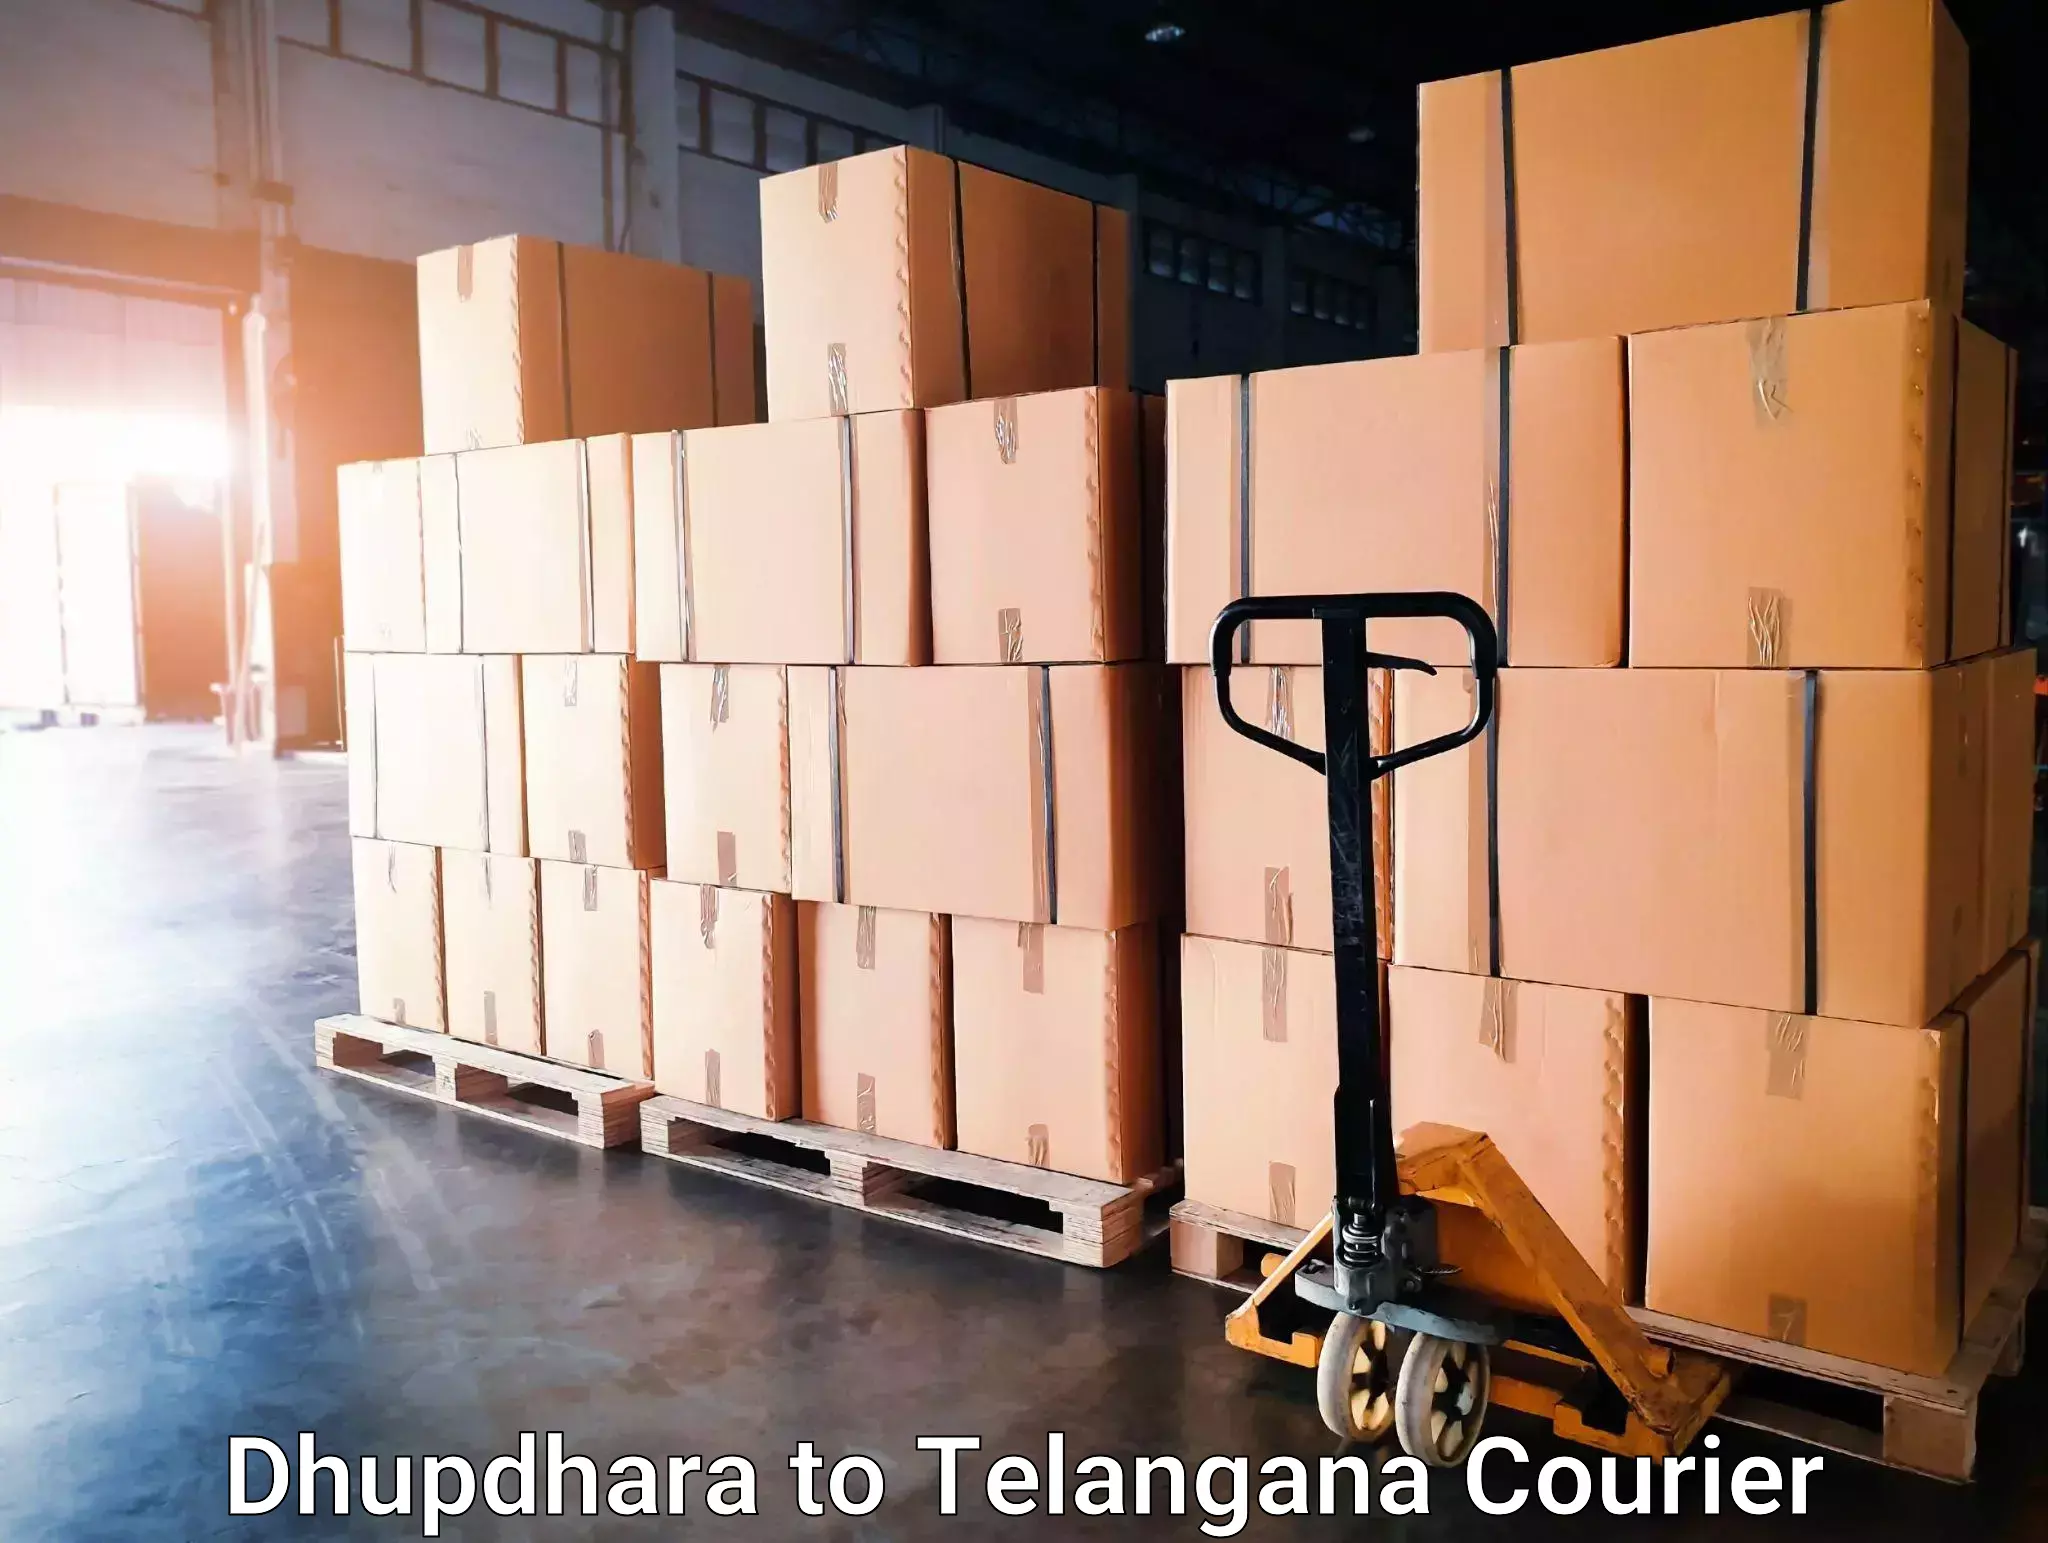 High-performance logistics Dhupdhara to Dubbak